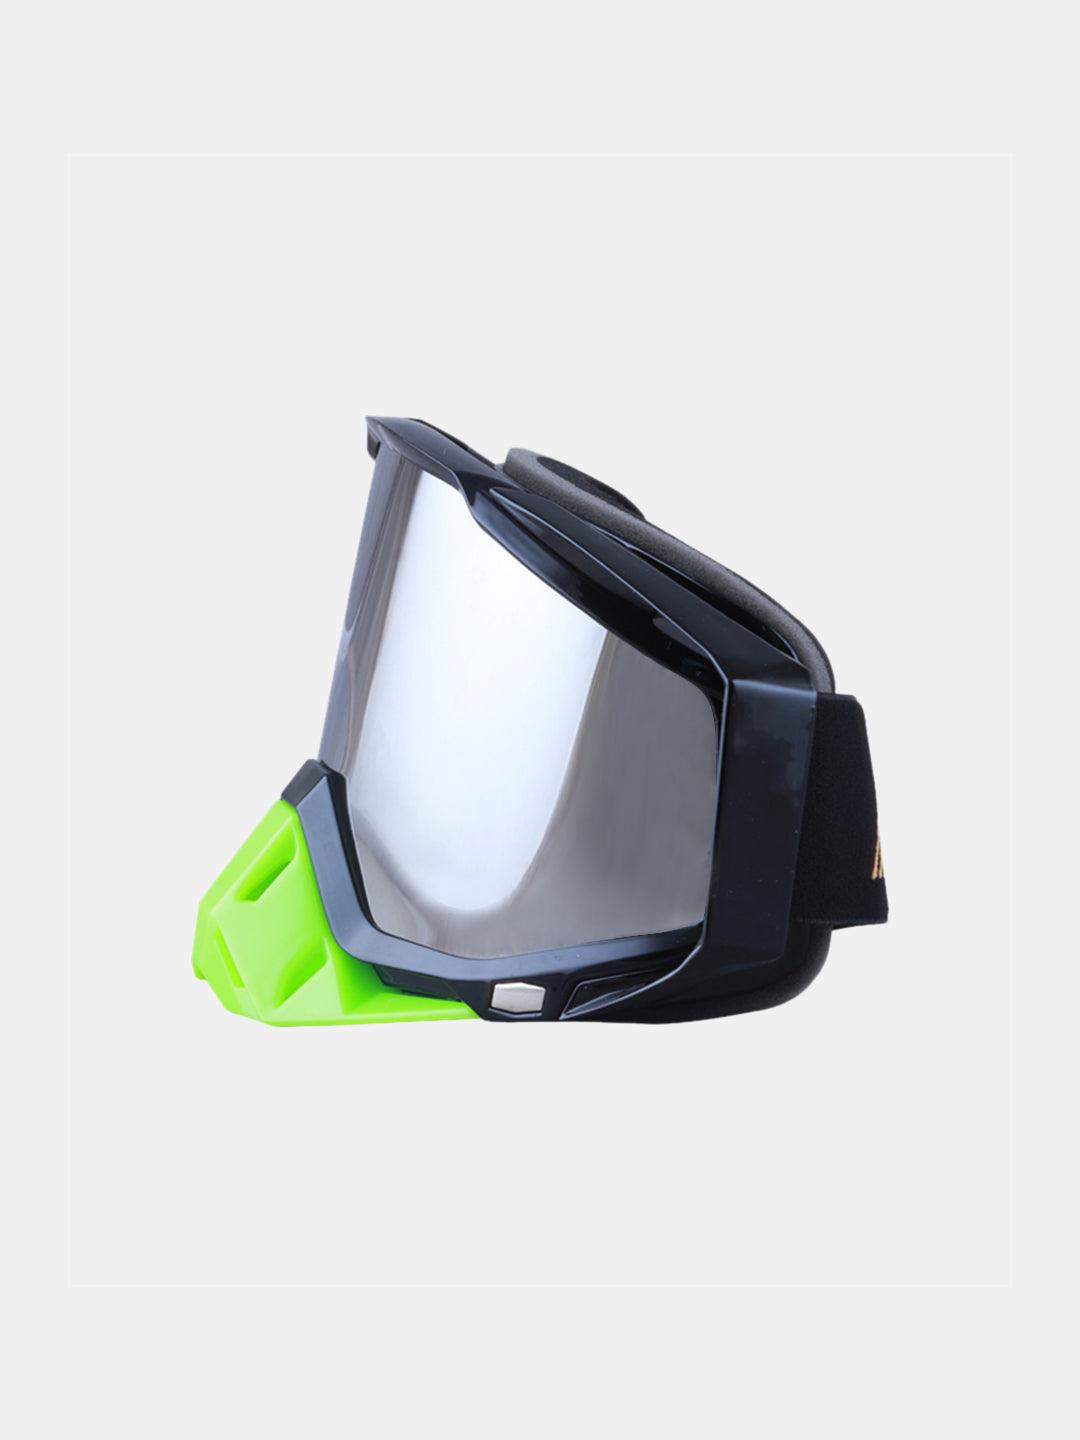 BSDDP Tinted Goggles -  F Green Black - Moto Modz